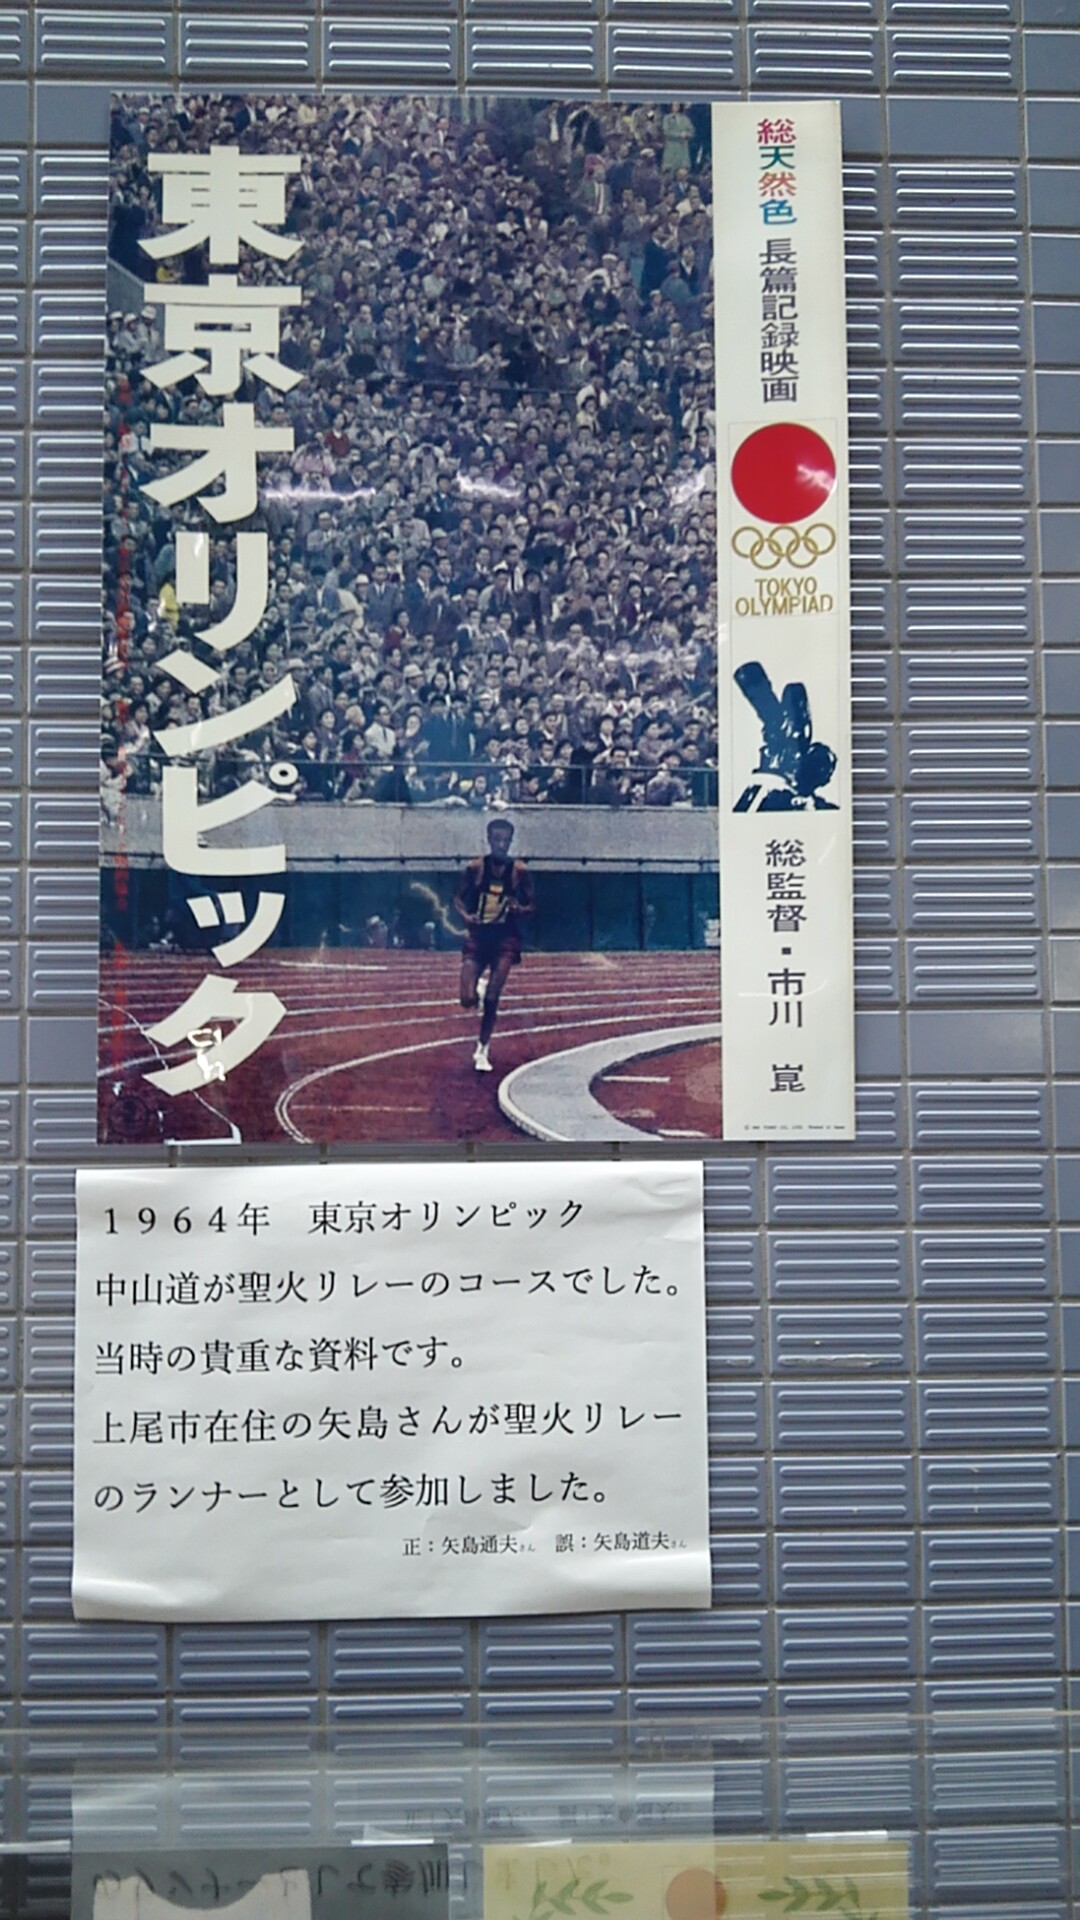 1964 東京オリンピック 当時の聖火リレーに関する展示 in 上尾市役所 | 上尾市の新築・不動産ならハーバルホーム